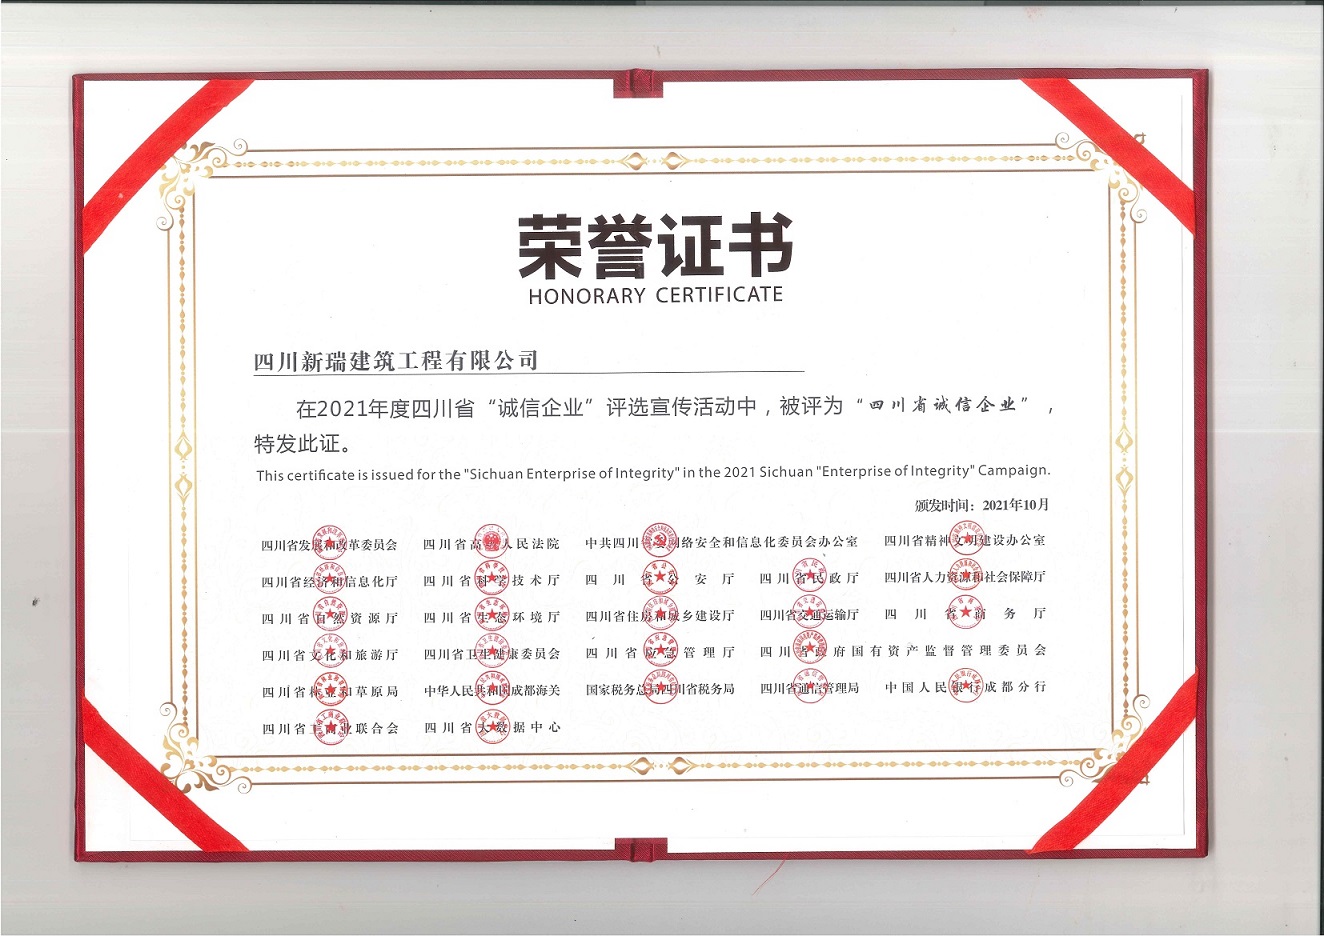 祝贺新葡的京集团350vip获得 四川省“诚信企业”荣誉称号